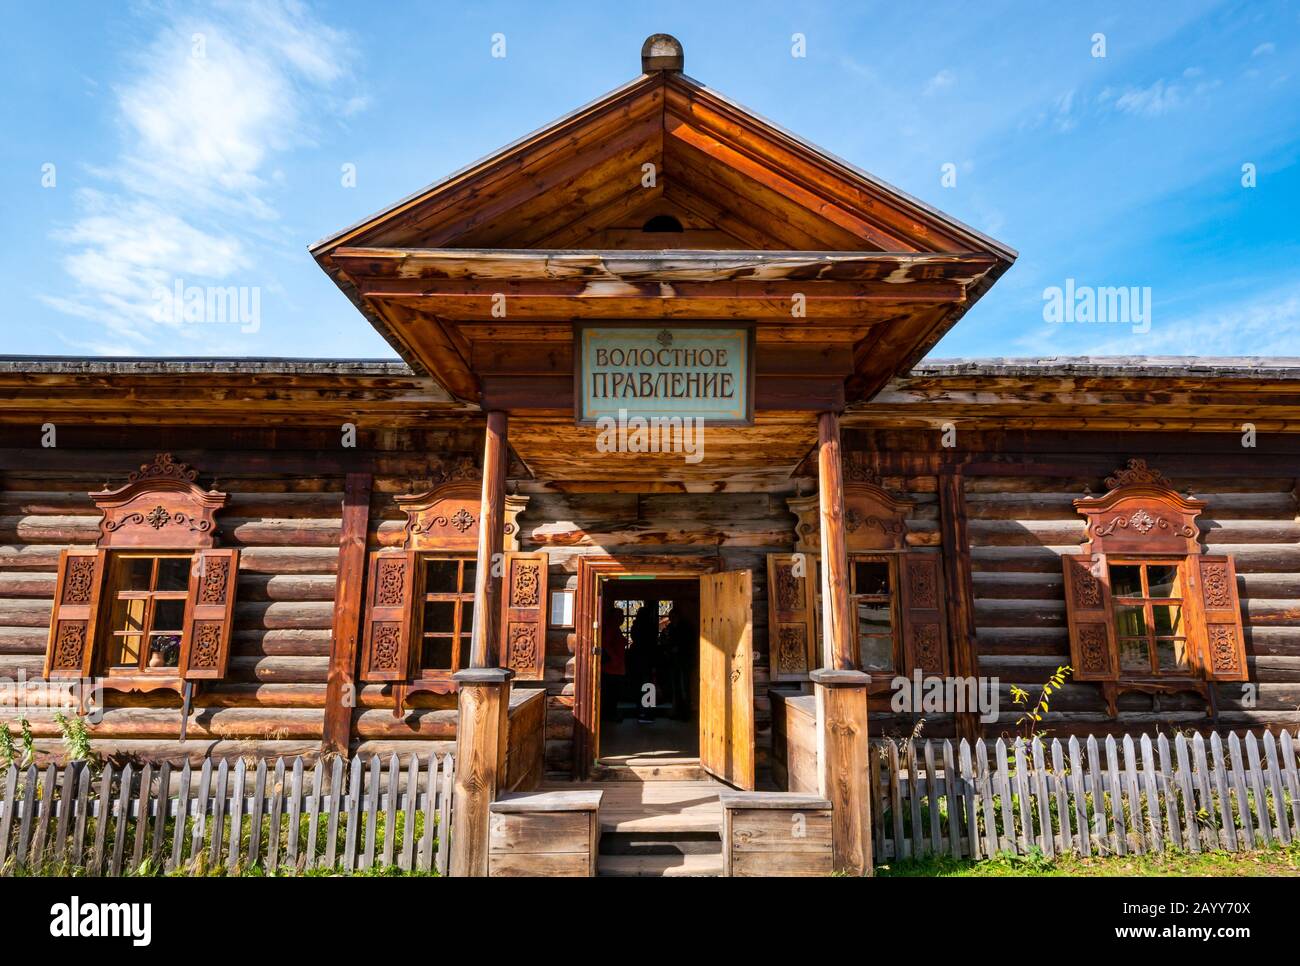 Bureau du gouvernement local bâtiment traditionnel en bois, Taltsy Museum of Wooden Architecture, région d'Irkoutsk, Sibérie, Russie Banque D'Images